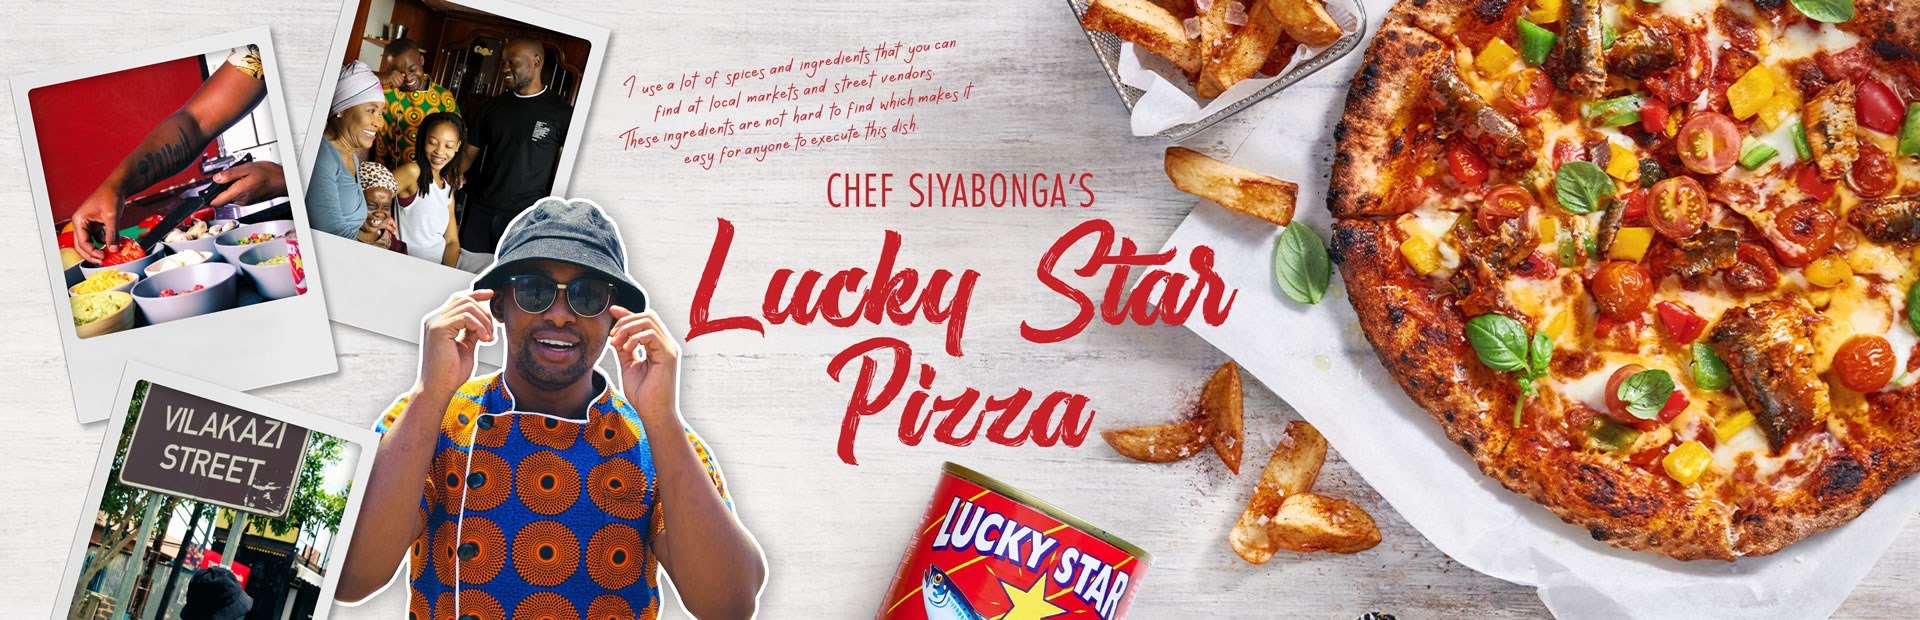 CHEF SIYABONGA’S Lucky Star Pizza